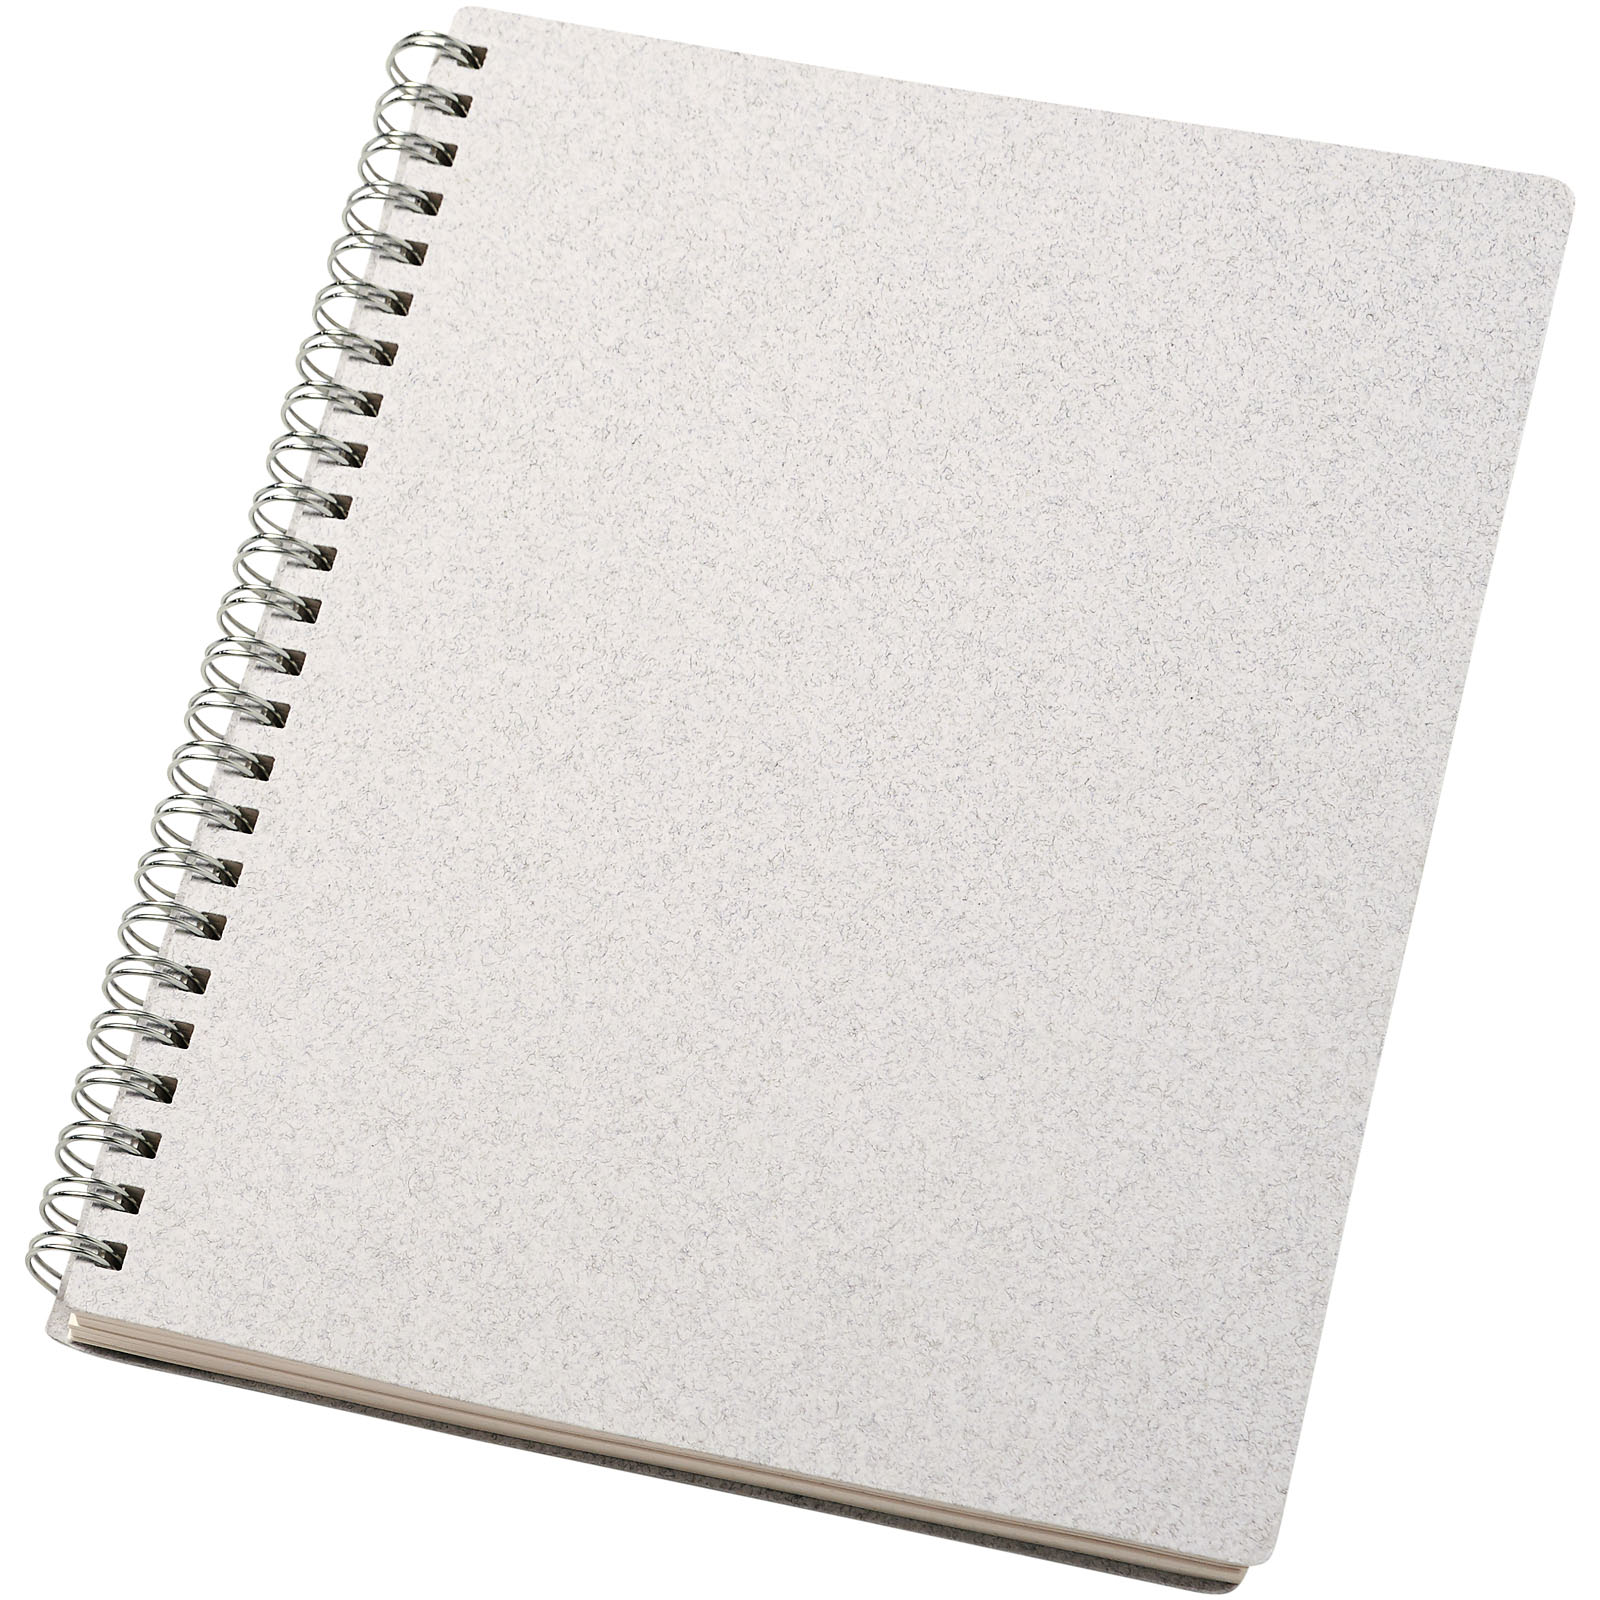 Tečkovaný zápisník CLIME z recyklovaných materiálů, formát A5 - white